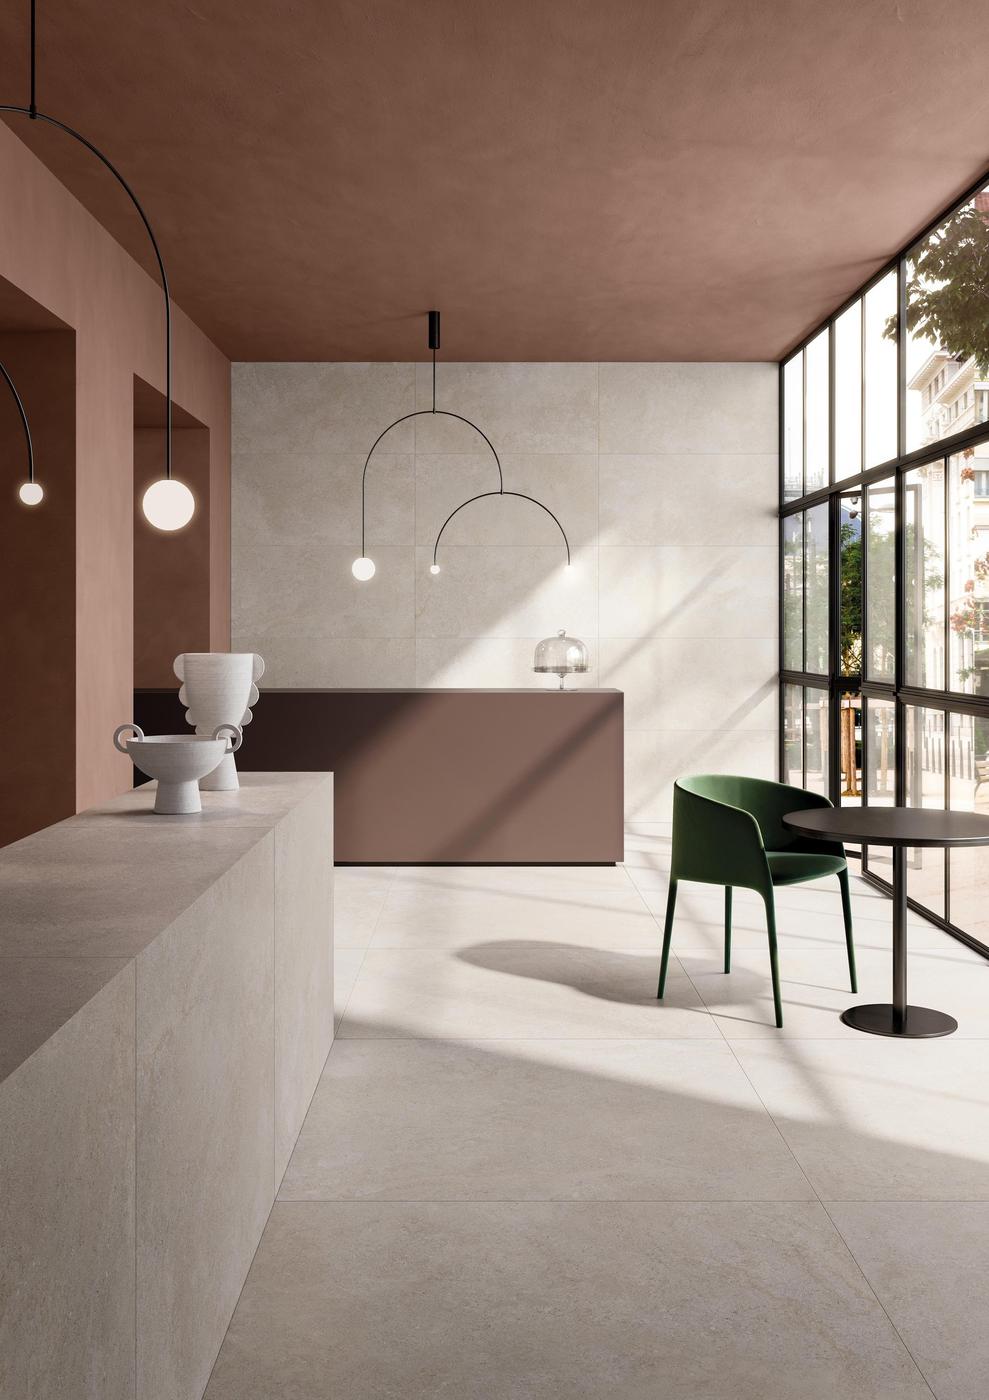 Carrelage effet pierre blanc sans motifs taille 60x60 cm dans un salon avec murs terre cuite et mobilier moderne